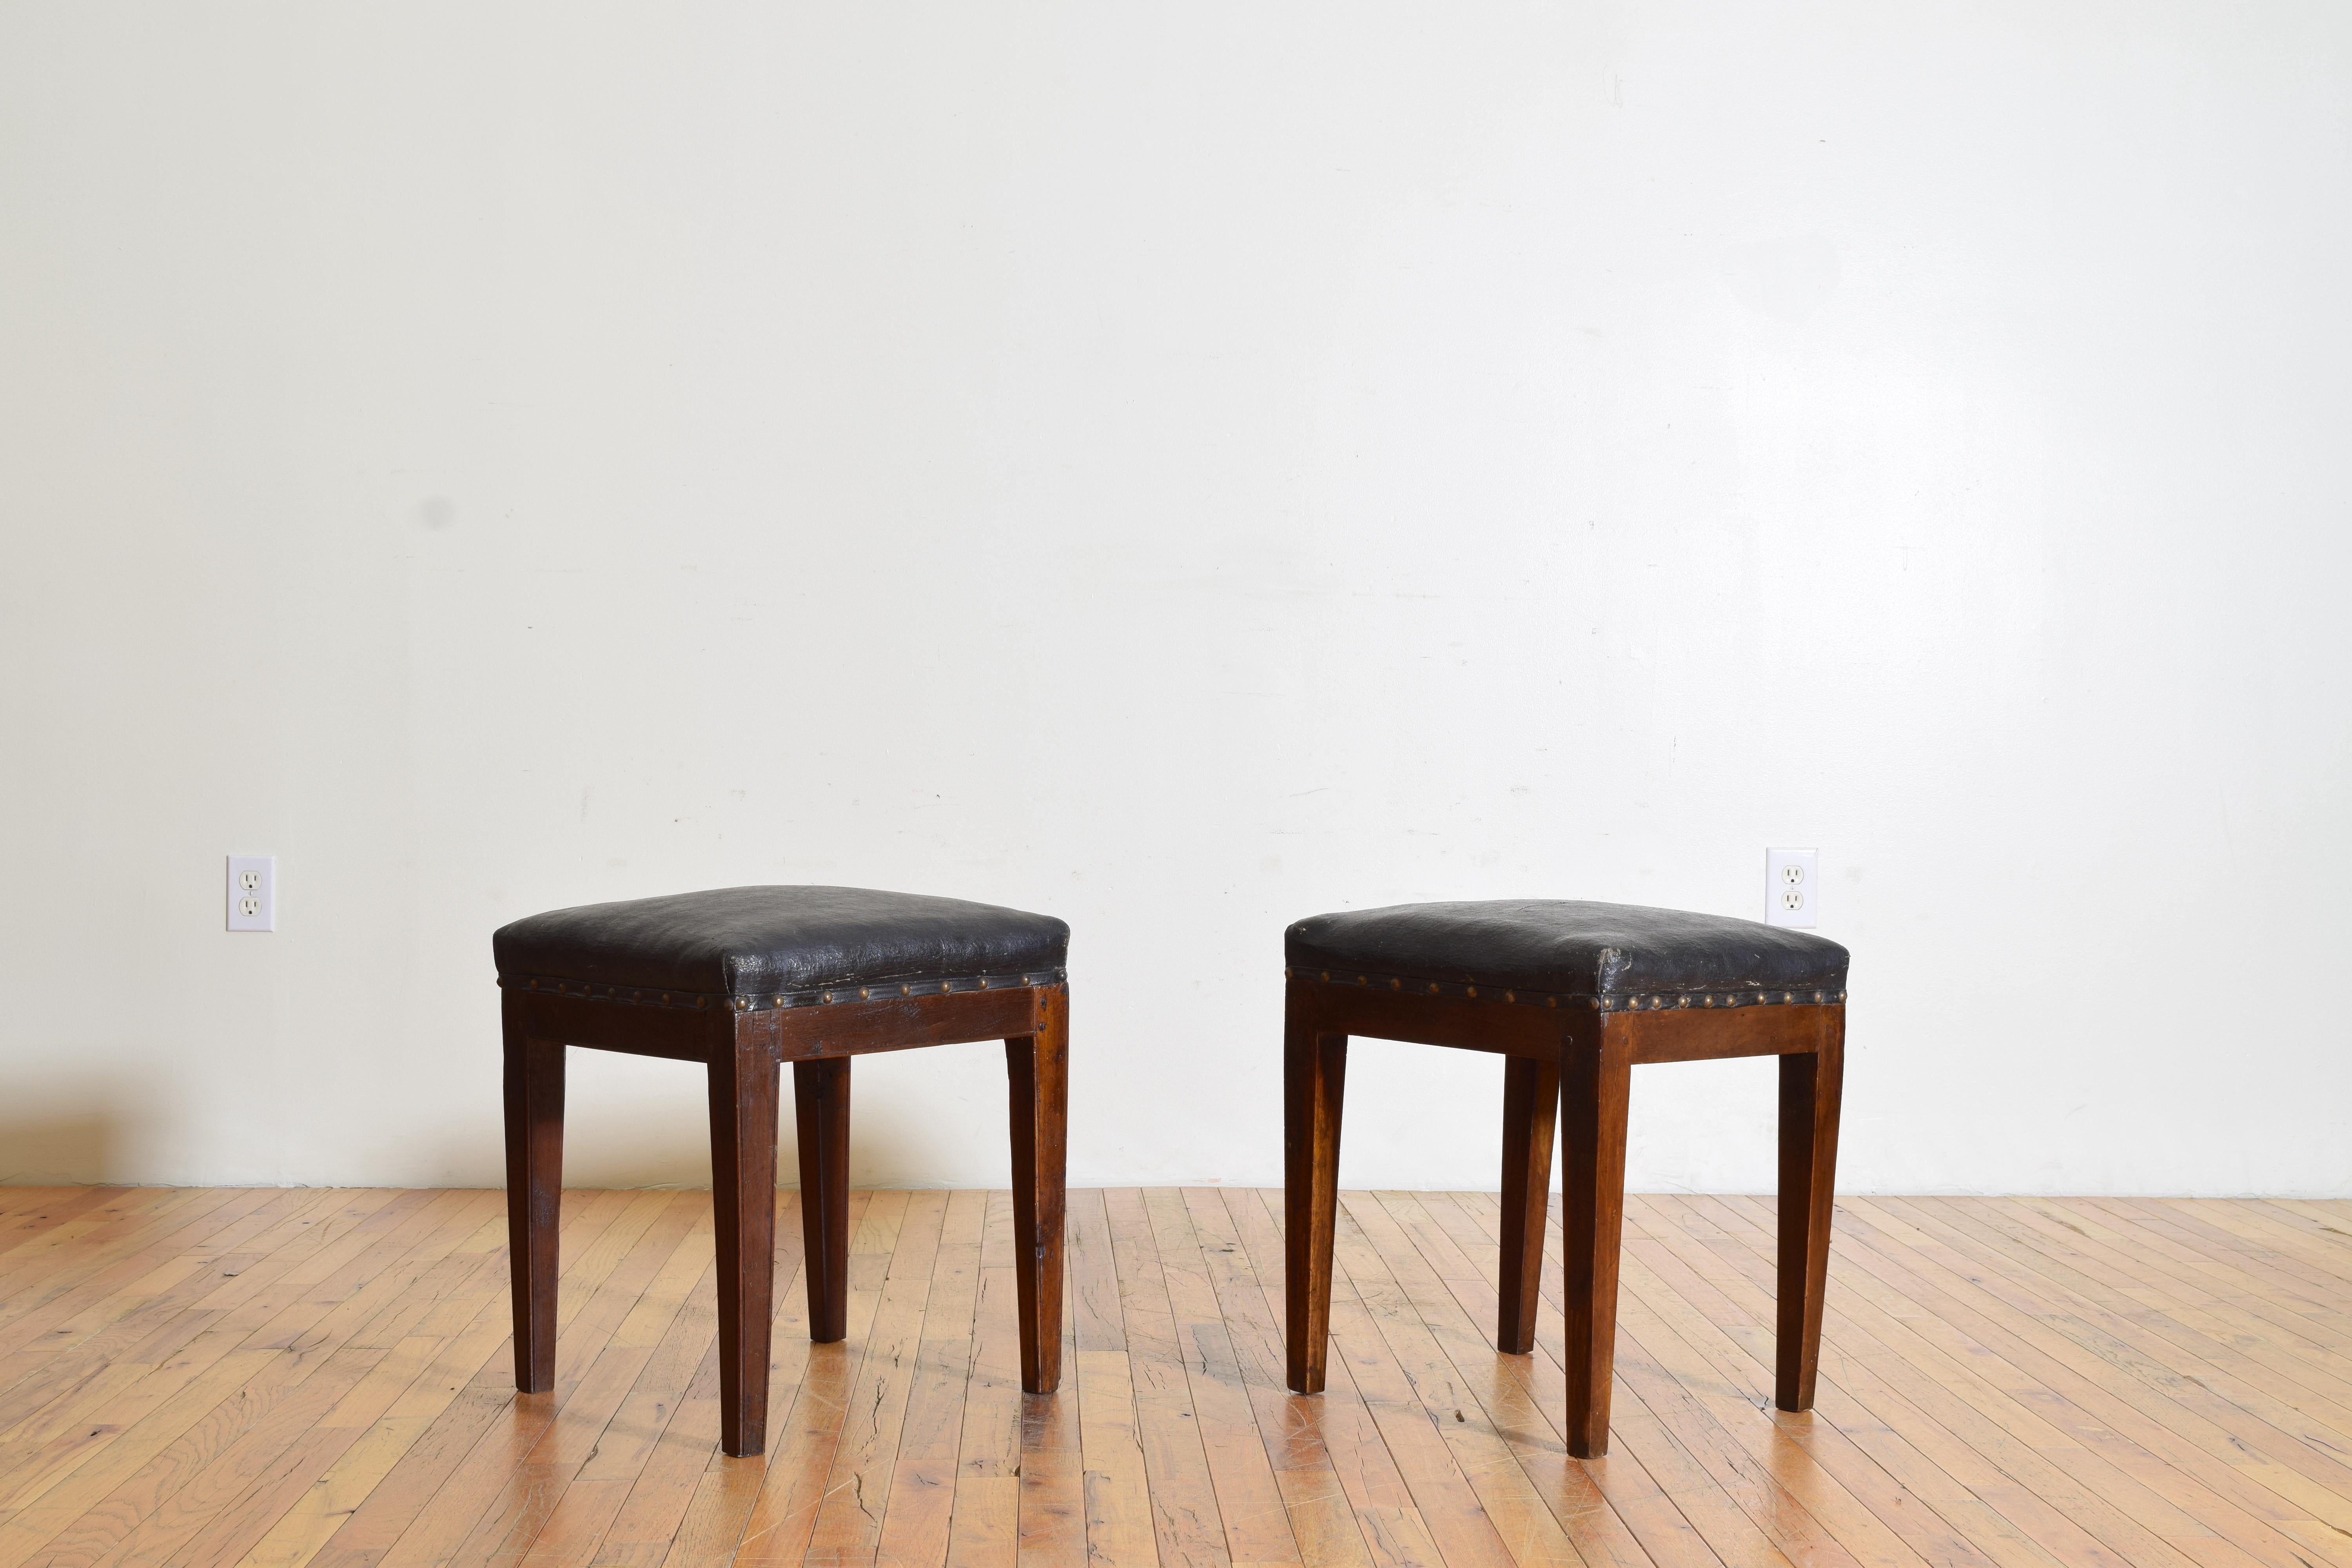 Das Paar hat quadratische, mit antikem Wachstuch bezogene Tischplatten mit Nagelkopfverzierung und steht auf quadratischen, spitz zulaufenden Beinen. 